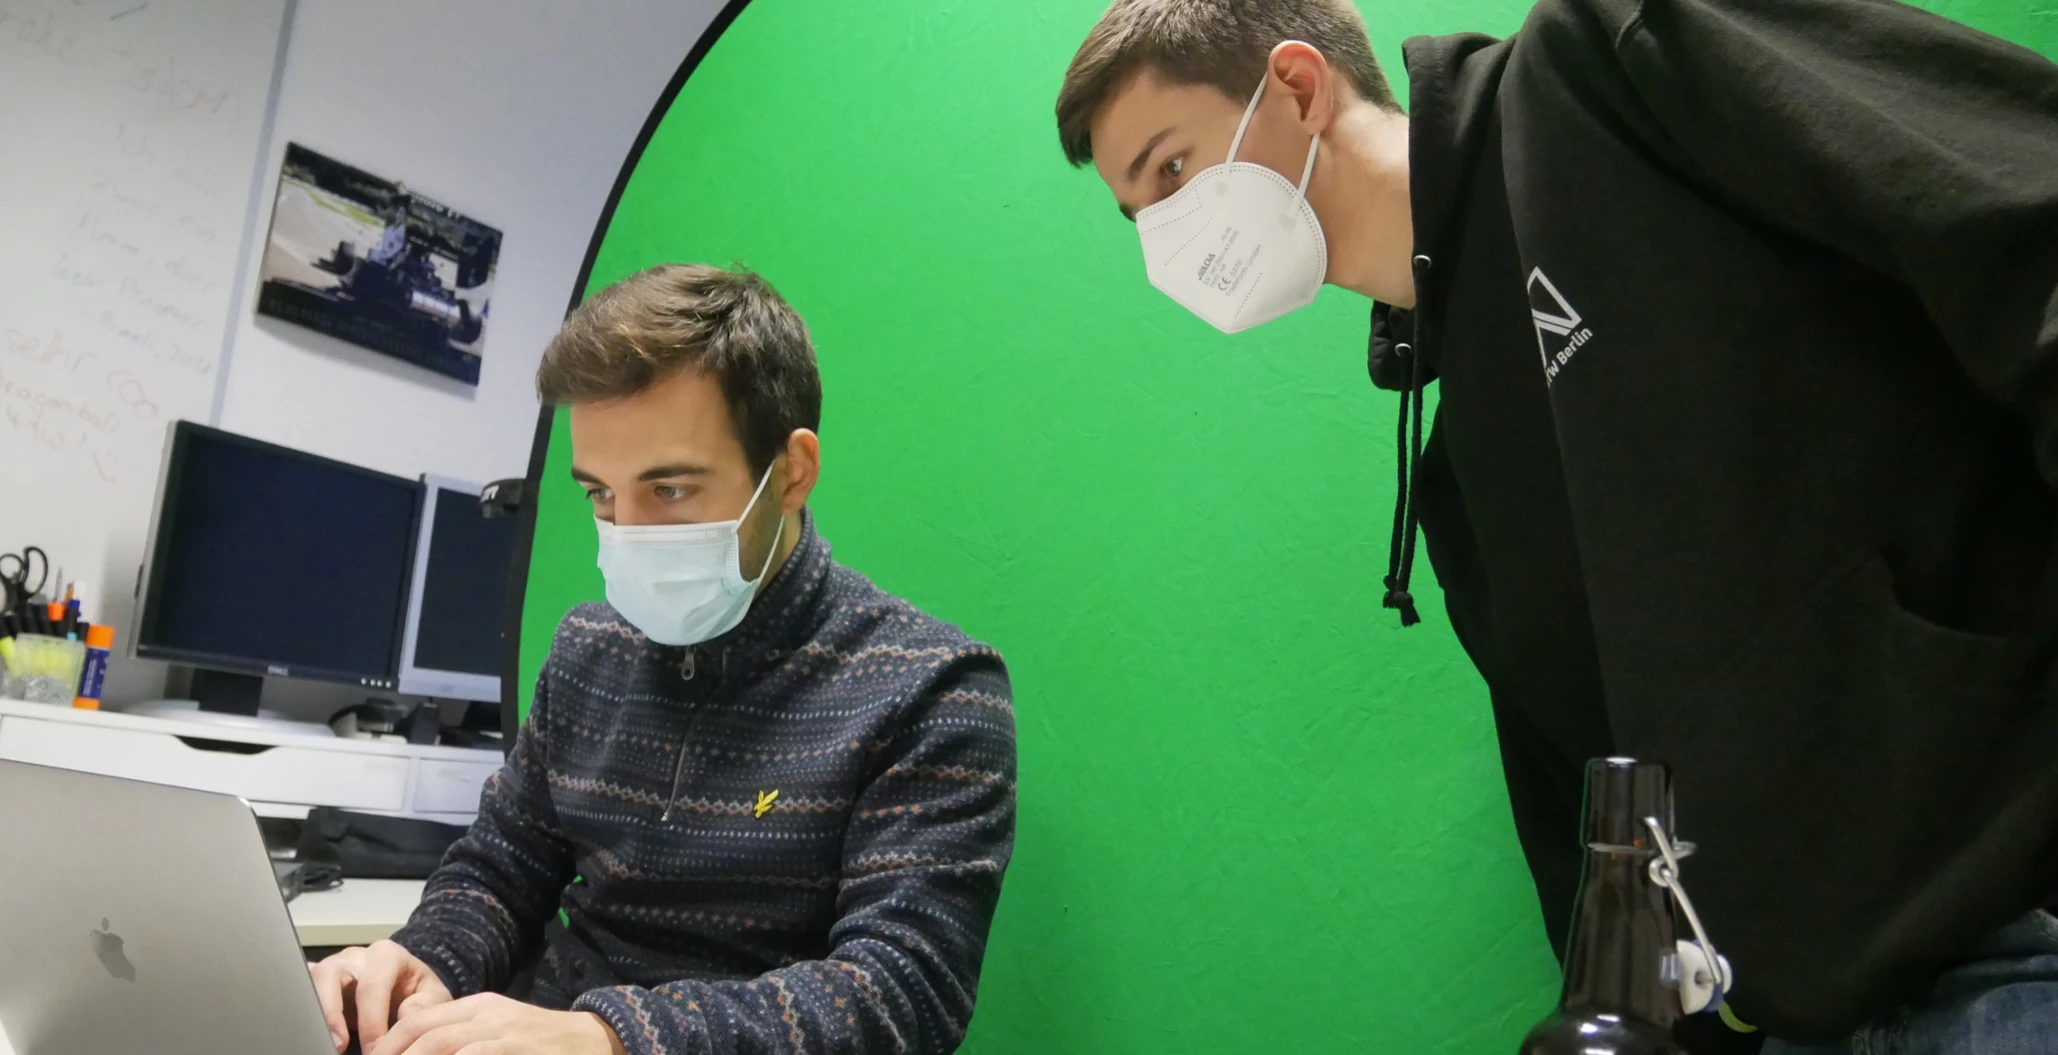 Zwei CoderDojo-Mitglieder bereiten ein Workshop-Video vor. Im Hintergrund befindet sich ein Greenscreen. Philipp (links) arbeitet am Laptop, während Luis (rechts) ihm über die Schulter sieht.